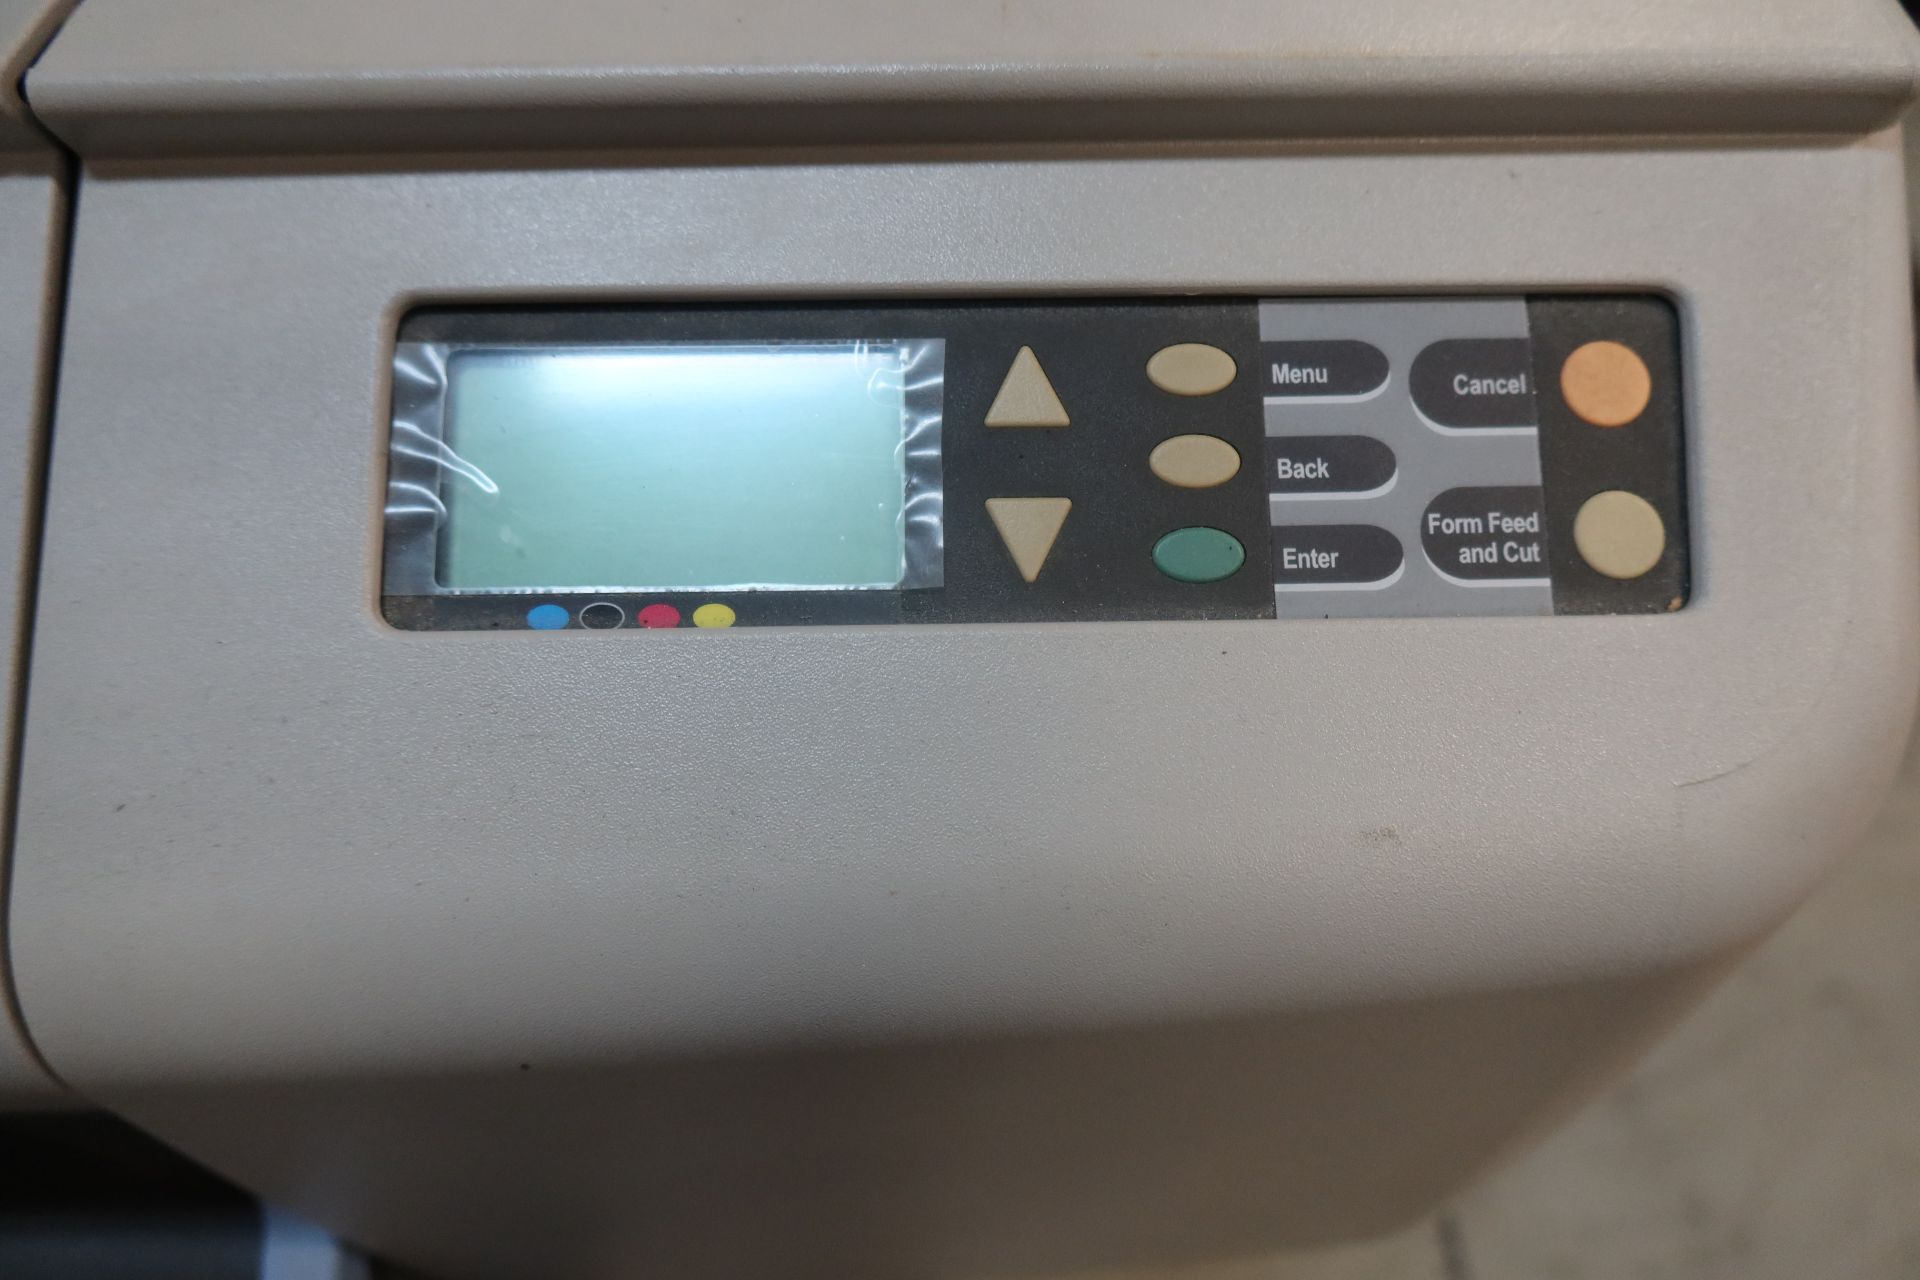 HP Designjet 500 C7769B Wide Format Color Printer - Image 2 of 4